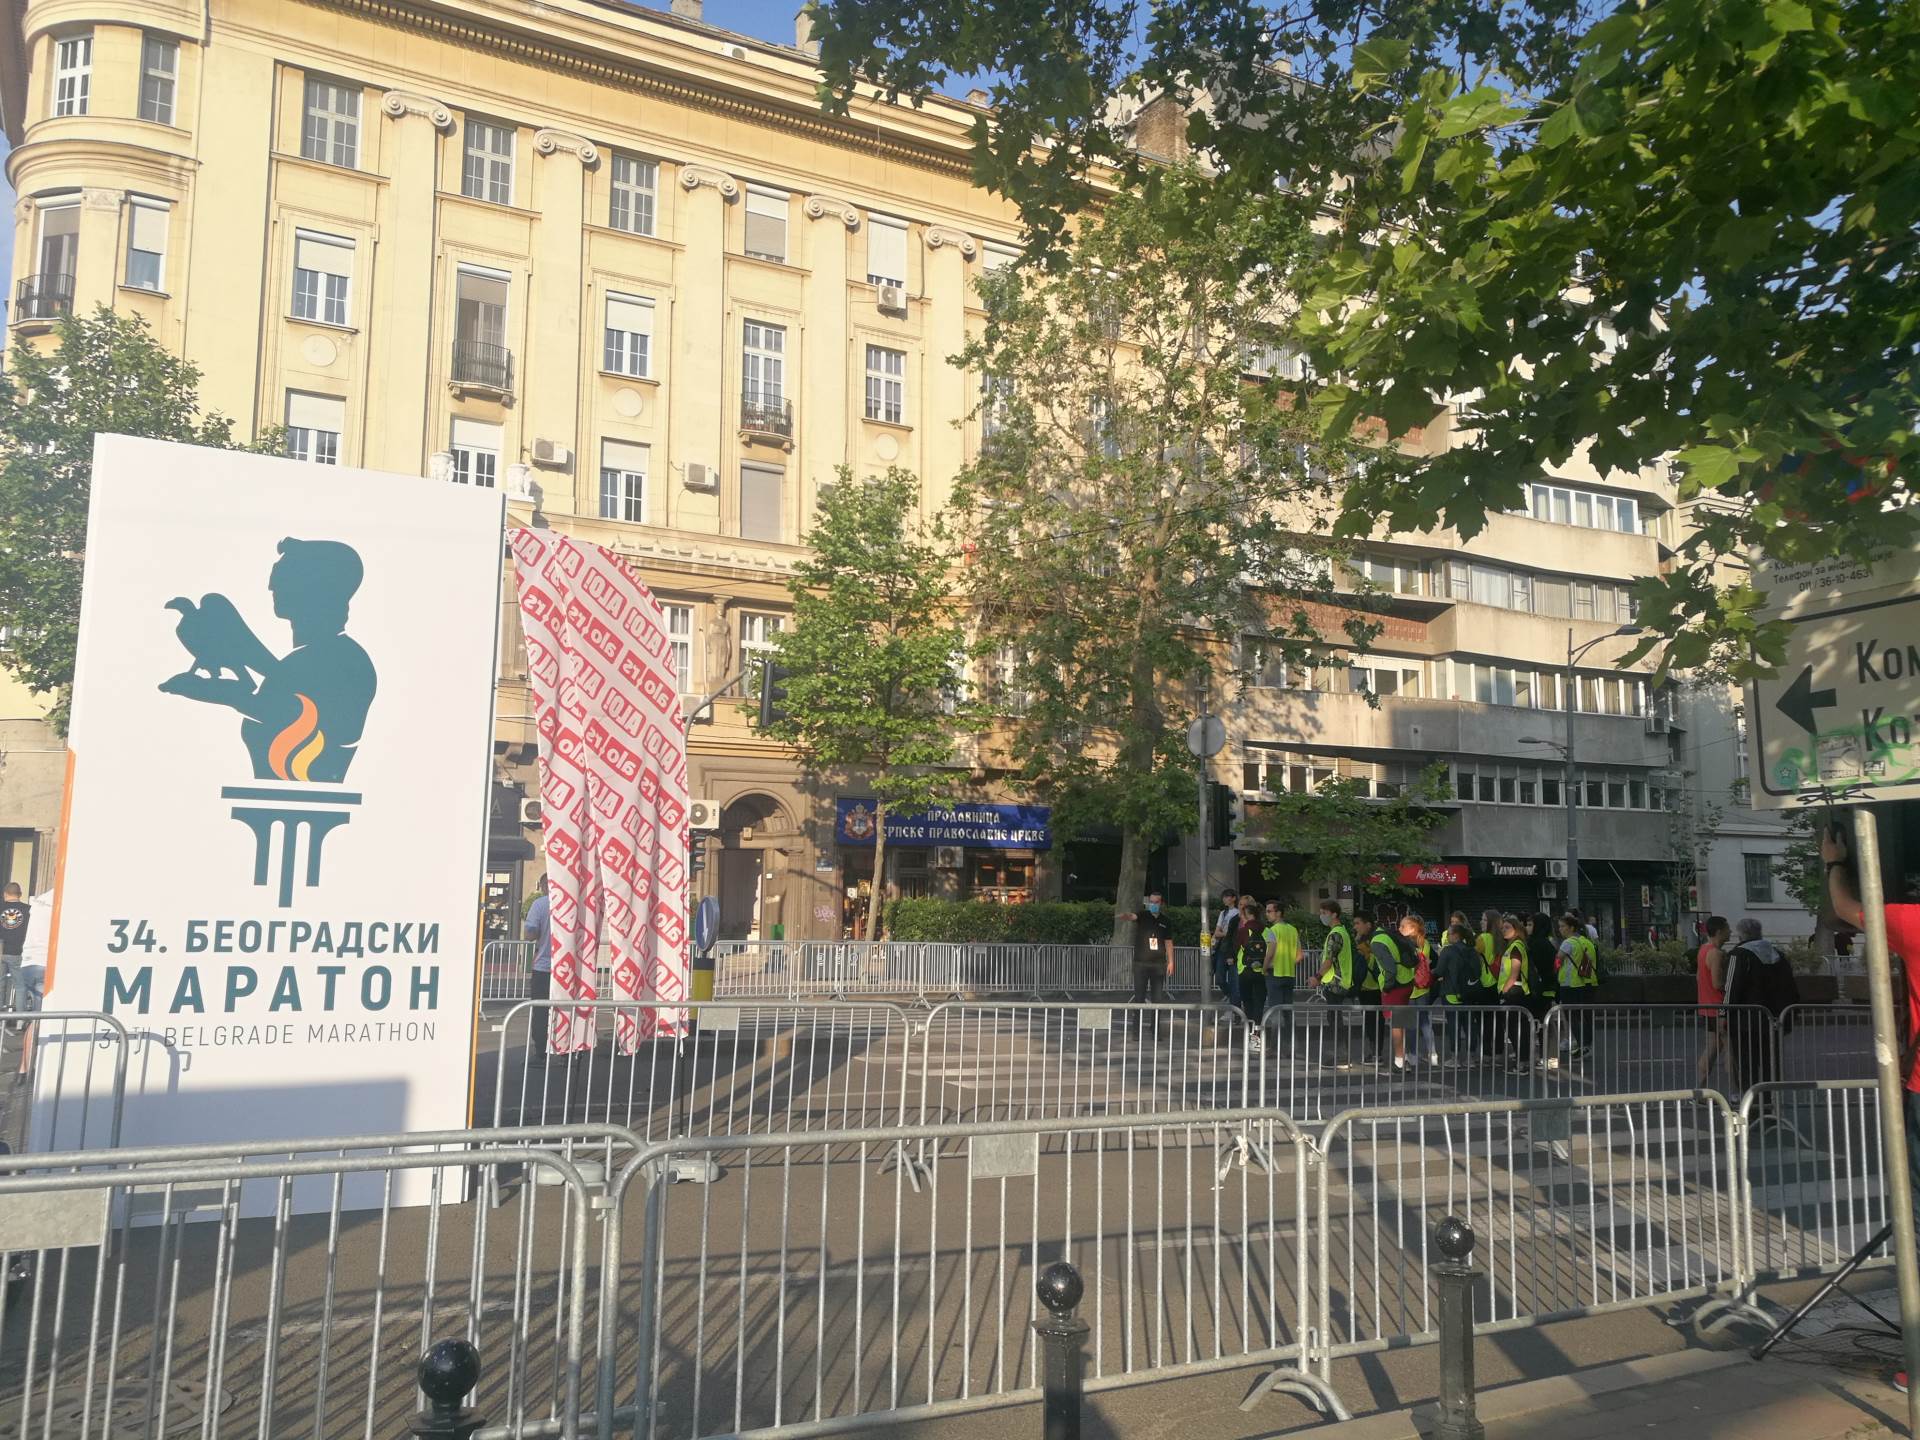  beogradski maraton trka zatvorene ulice foto 